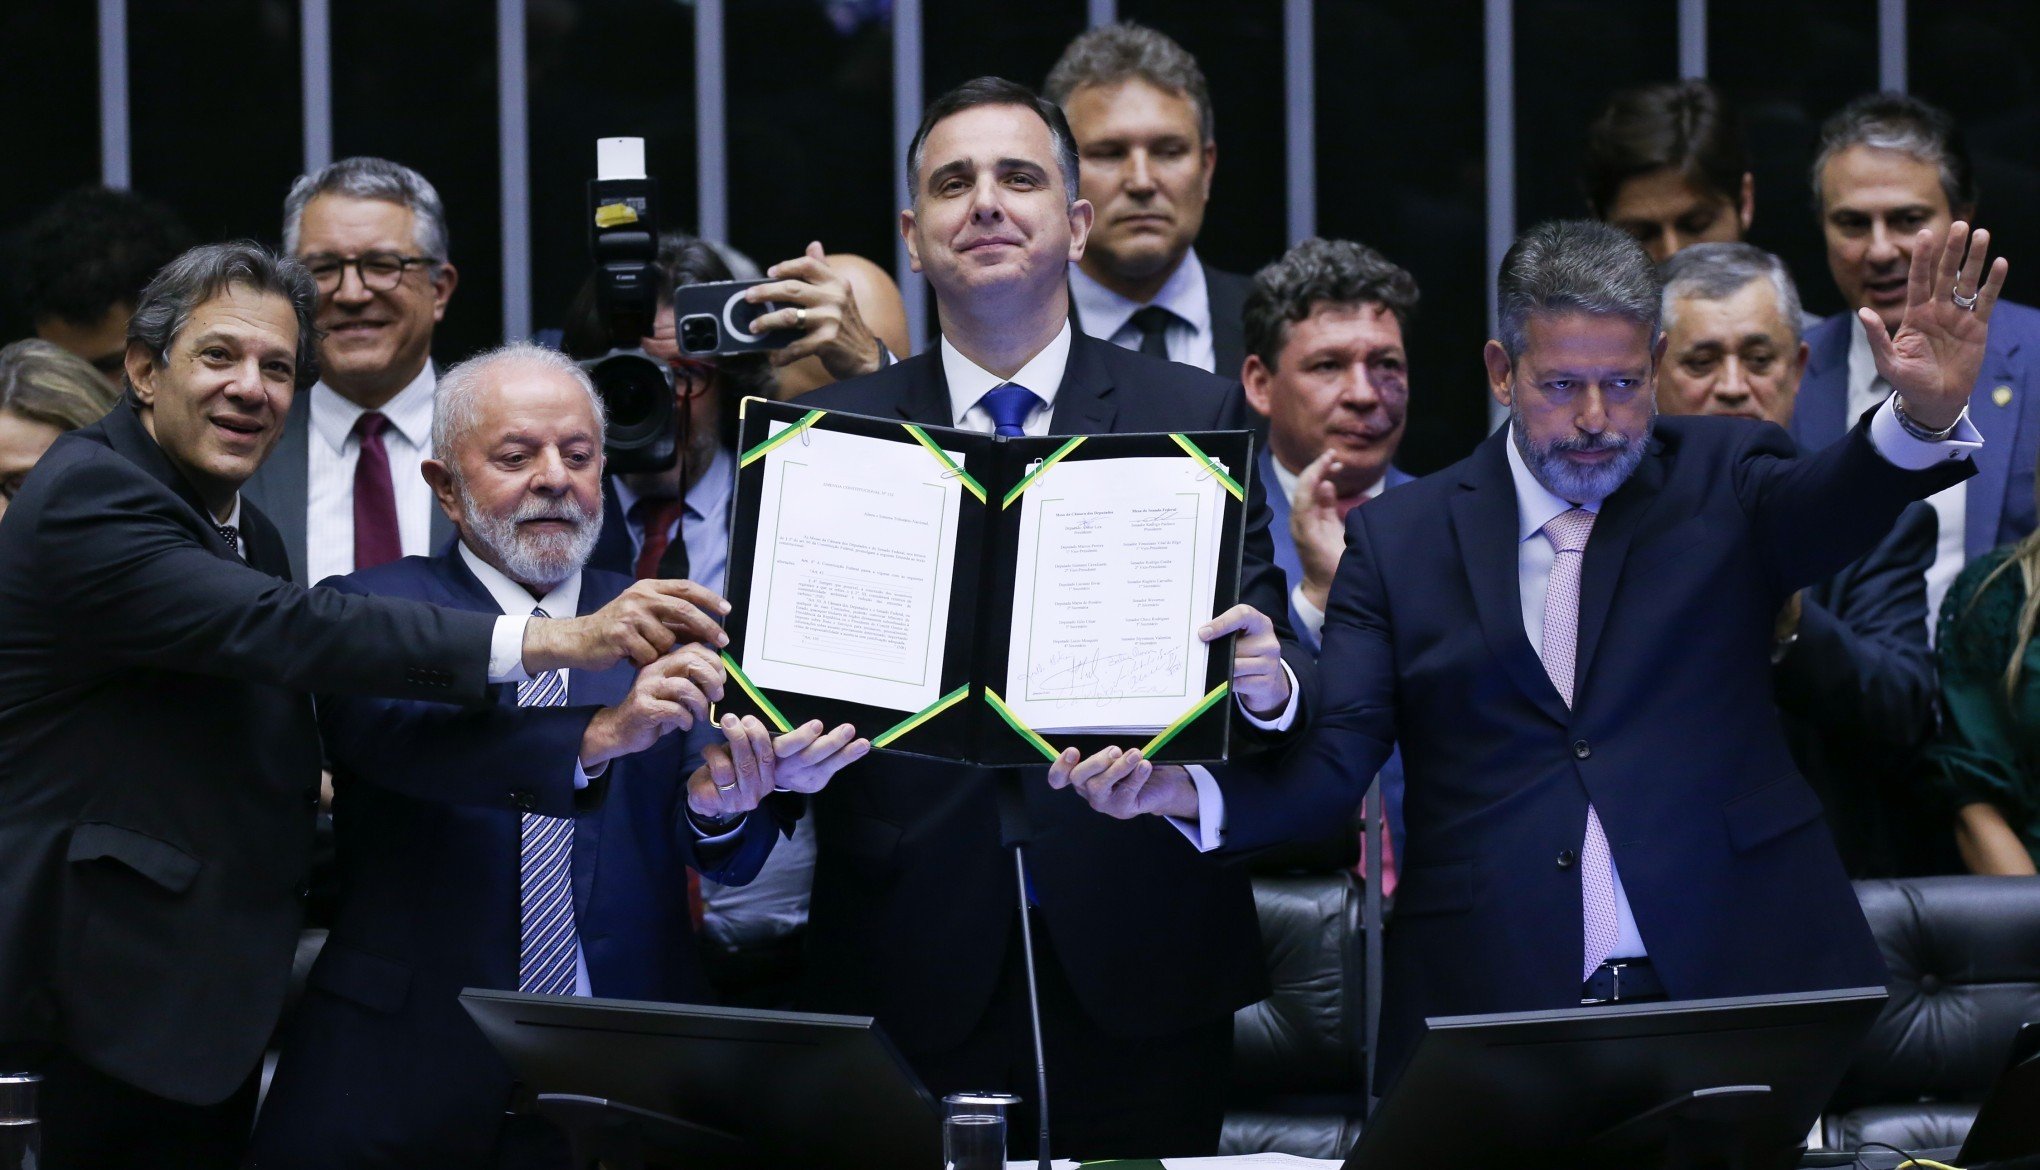 REFORMA TRIBUTÁRIA: Com a presença de Lula, congresso promulga emenda constitucional